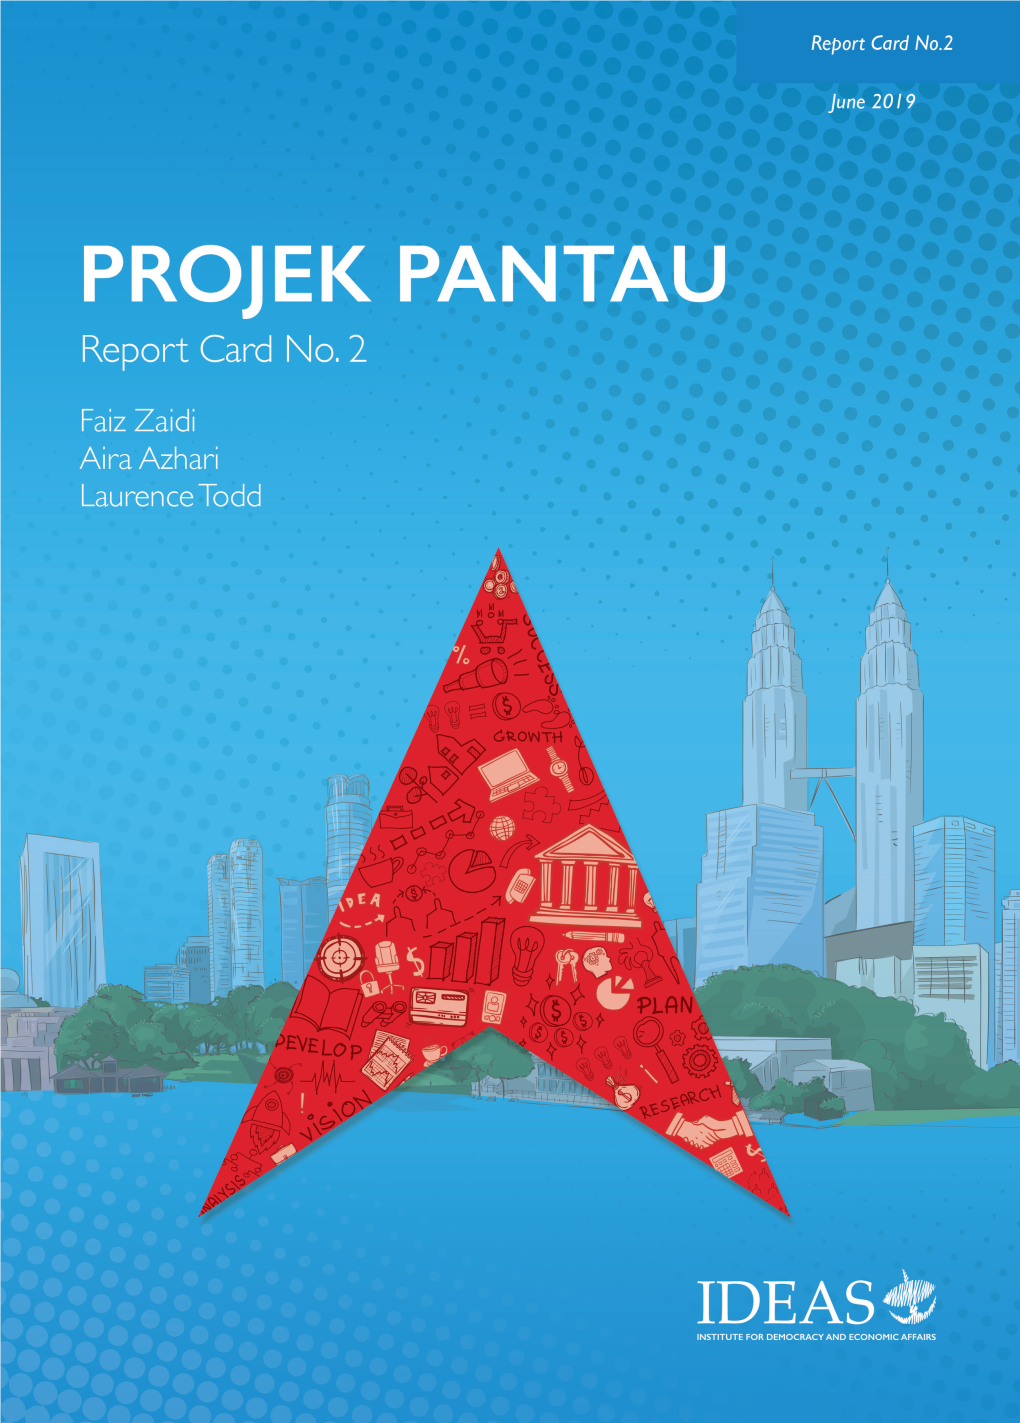 Projek Pantau Report Card No.2